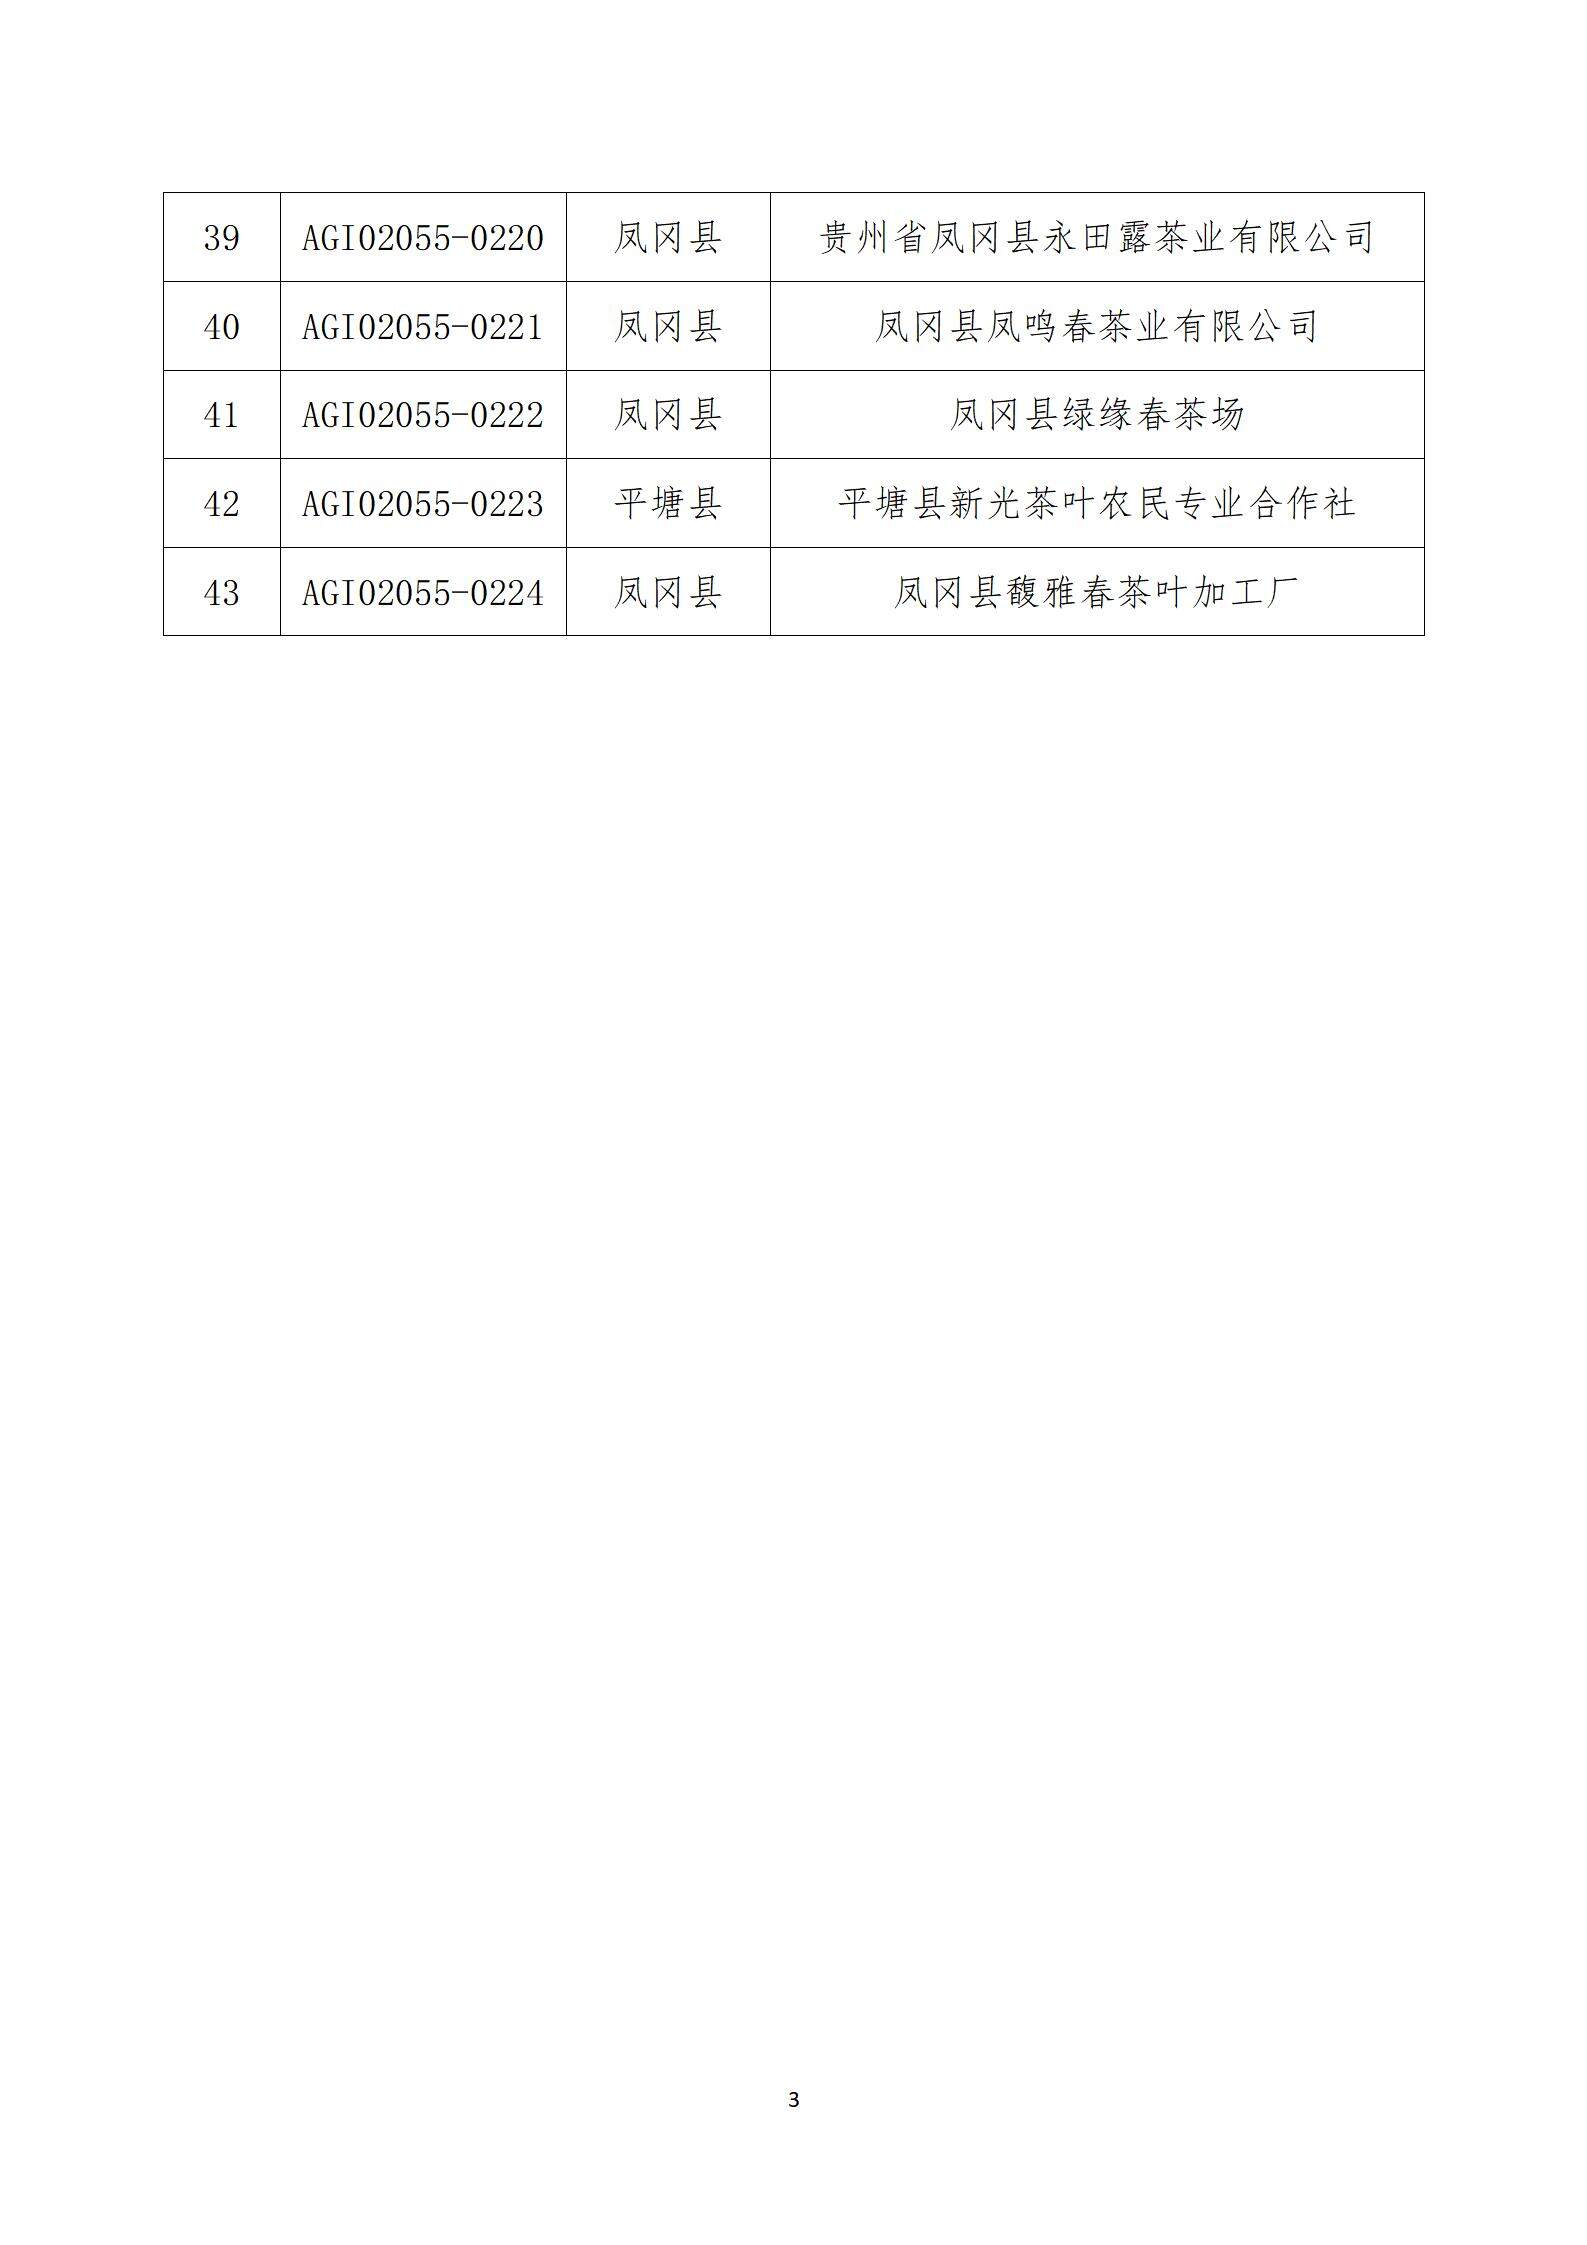 20190506 关于公布第四批获得“贵州绿茶”农产品地理标志使用企业公示_04.jpg